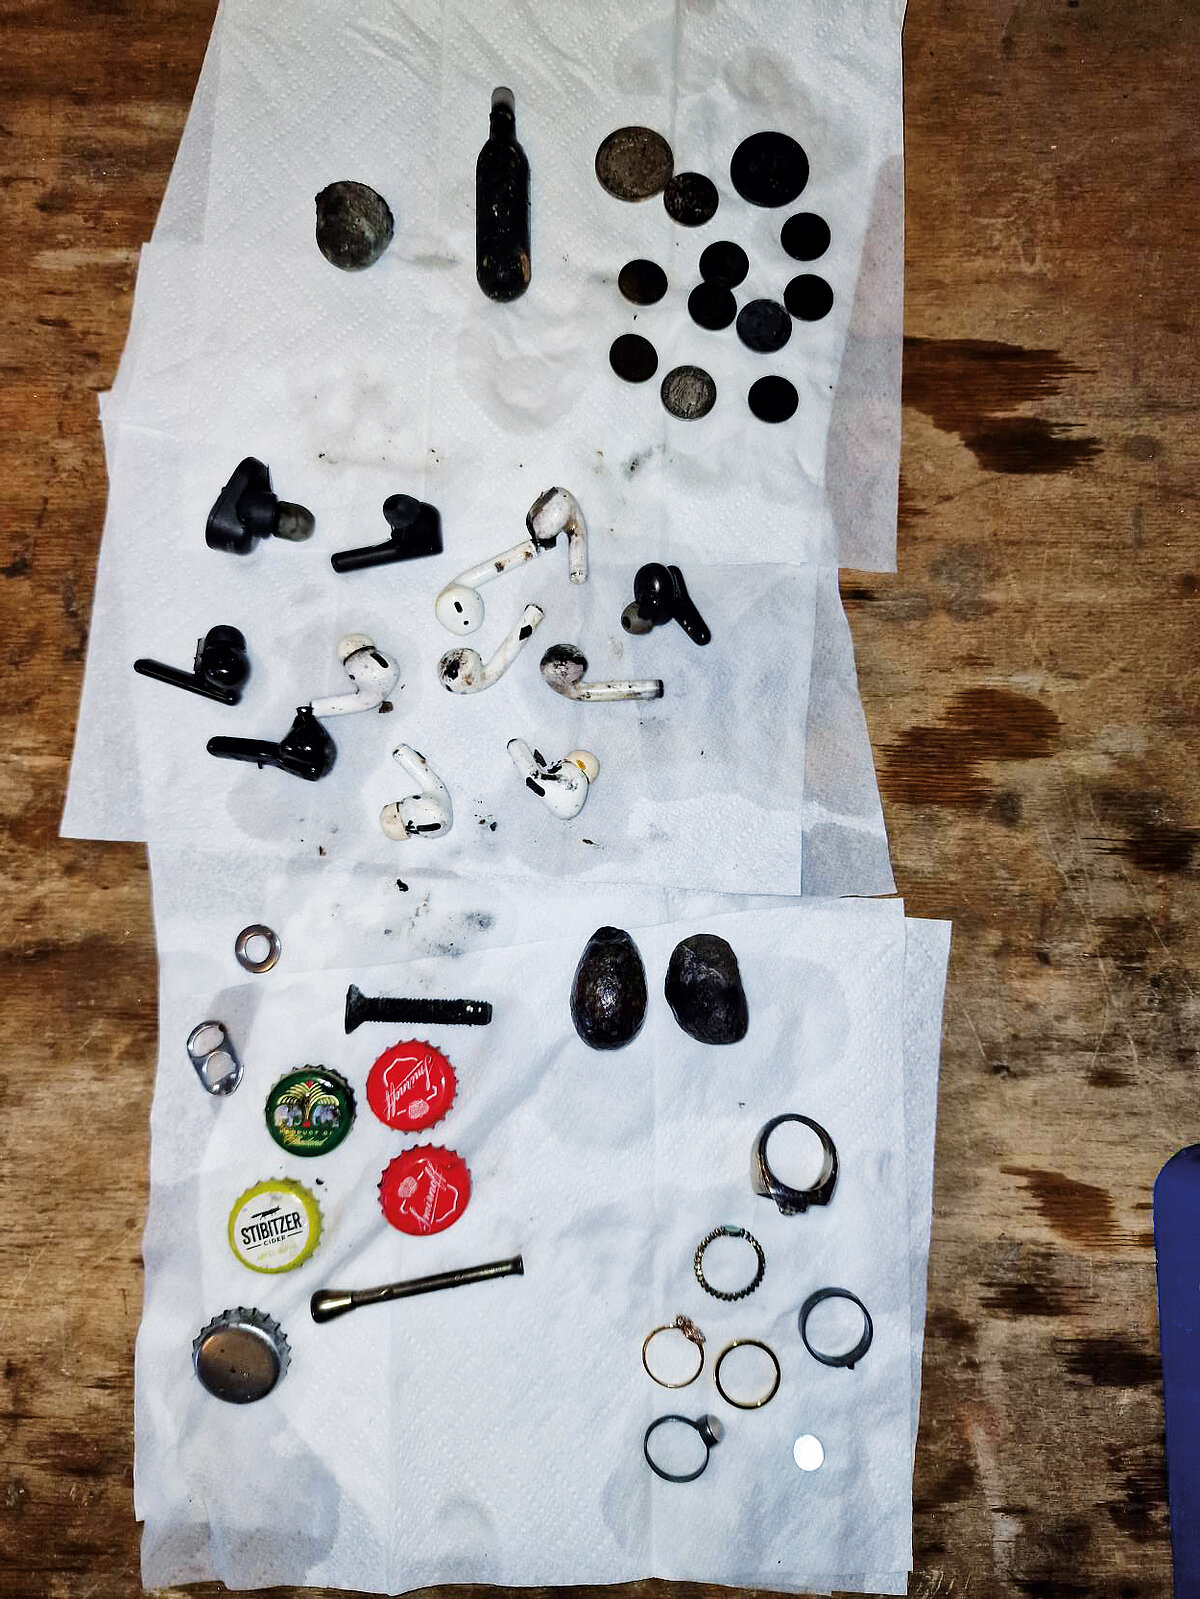 Bild von diversen Fundstücken, die in der Toilette gefunden wurden.